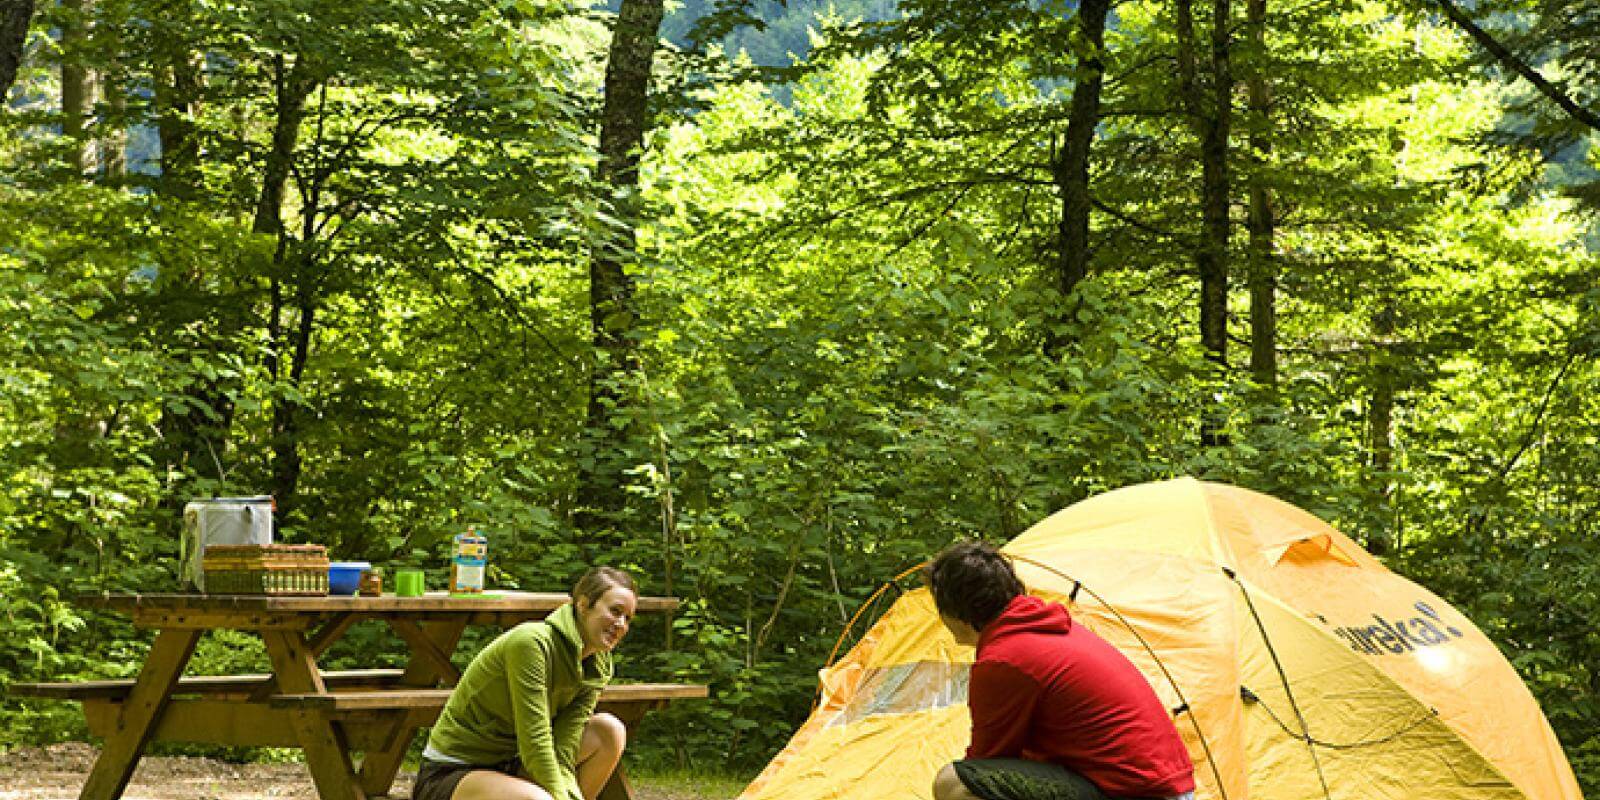 Camping hot. Палатка туристическая. Палатка в лесу. Кемпинг на природе. Туризм с палатками.